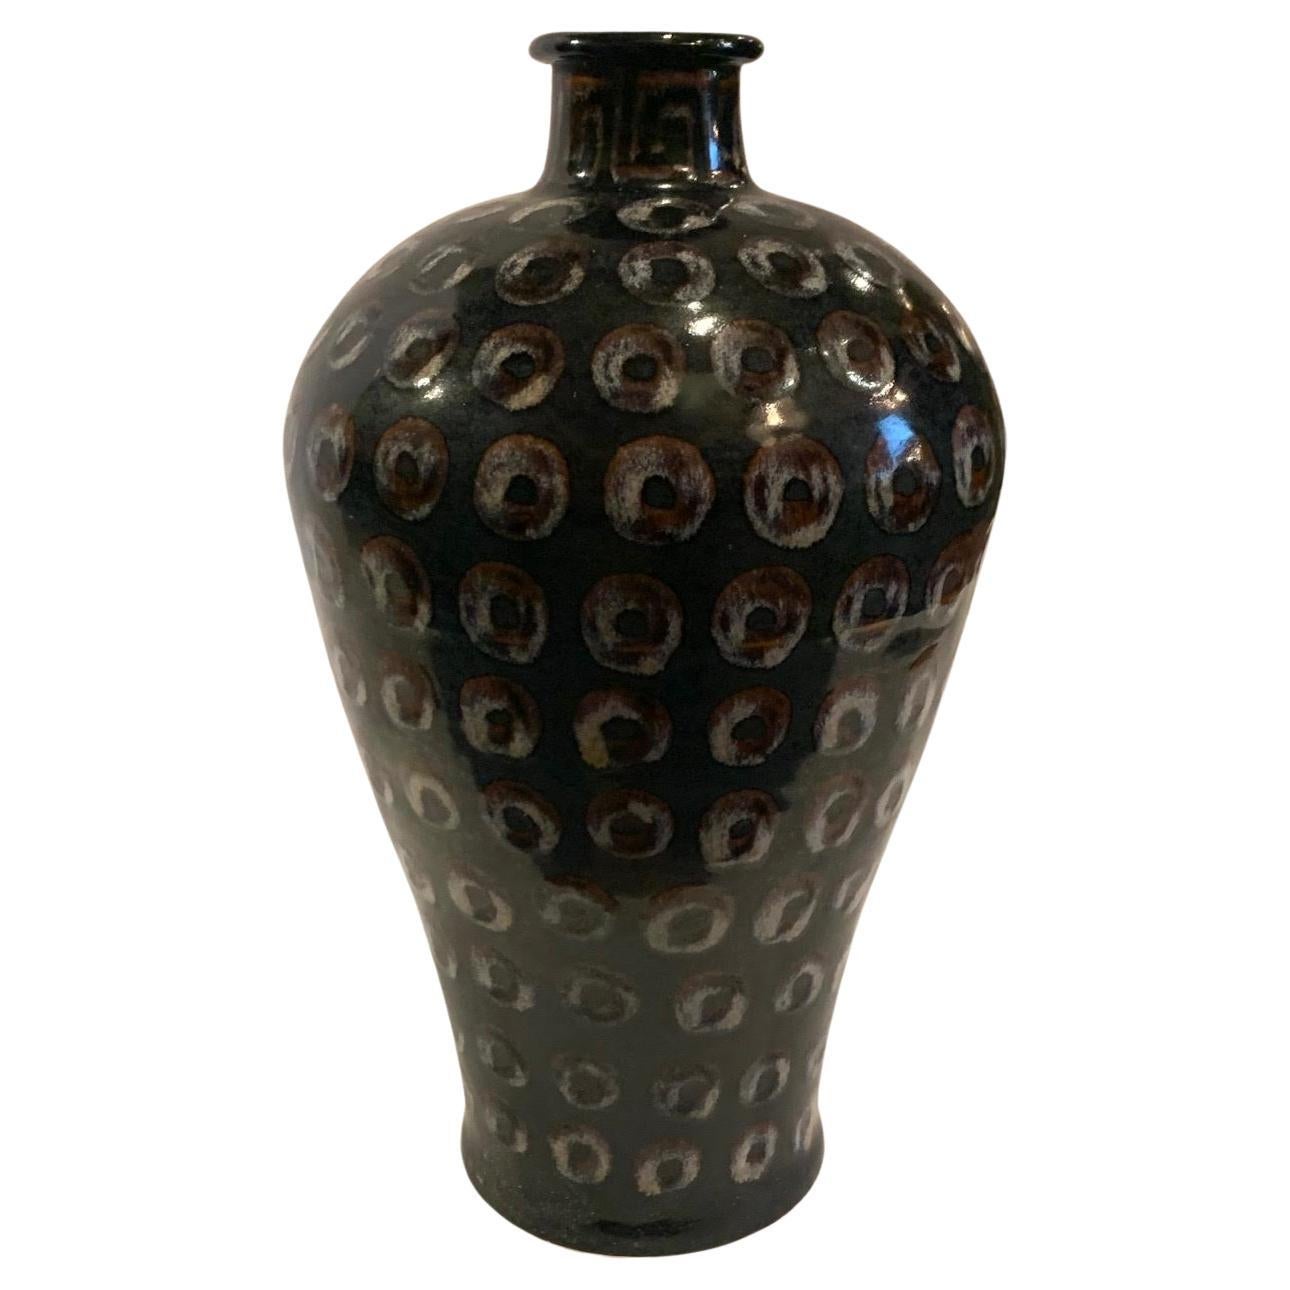 Vase à motif de cercles sur fond noir peint à la main, Chine, contemporain